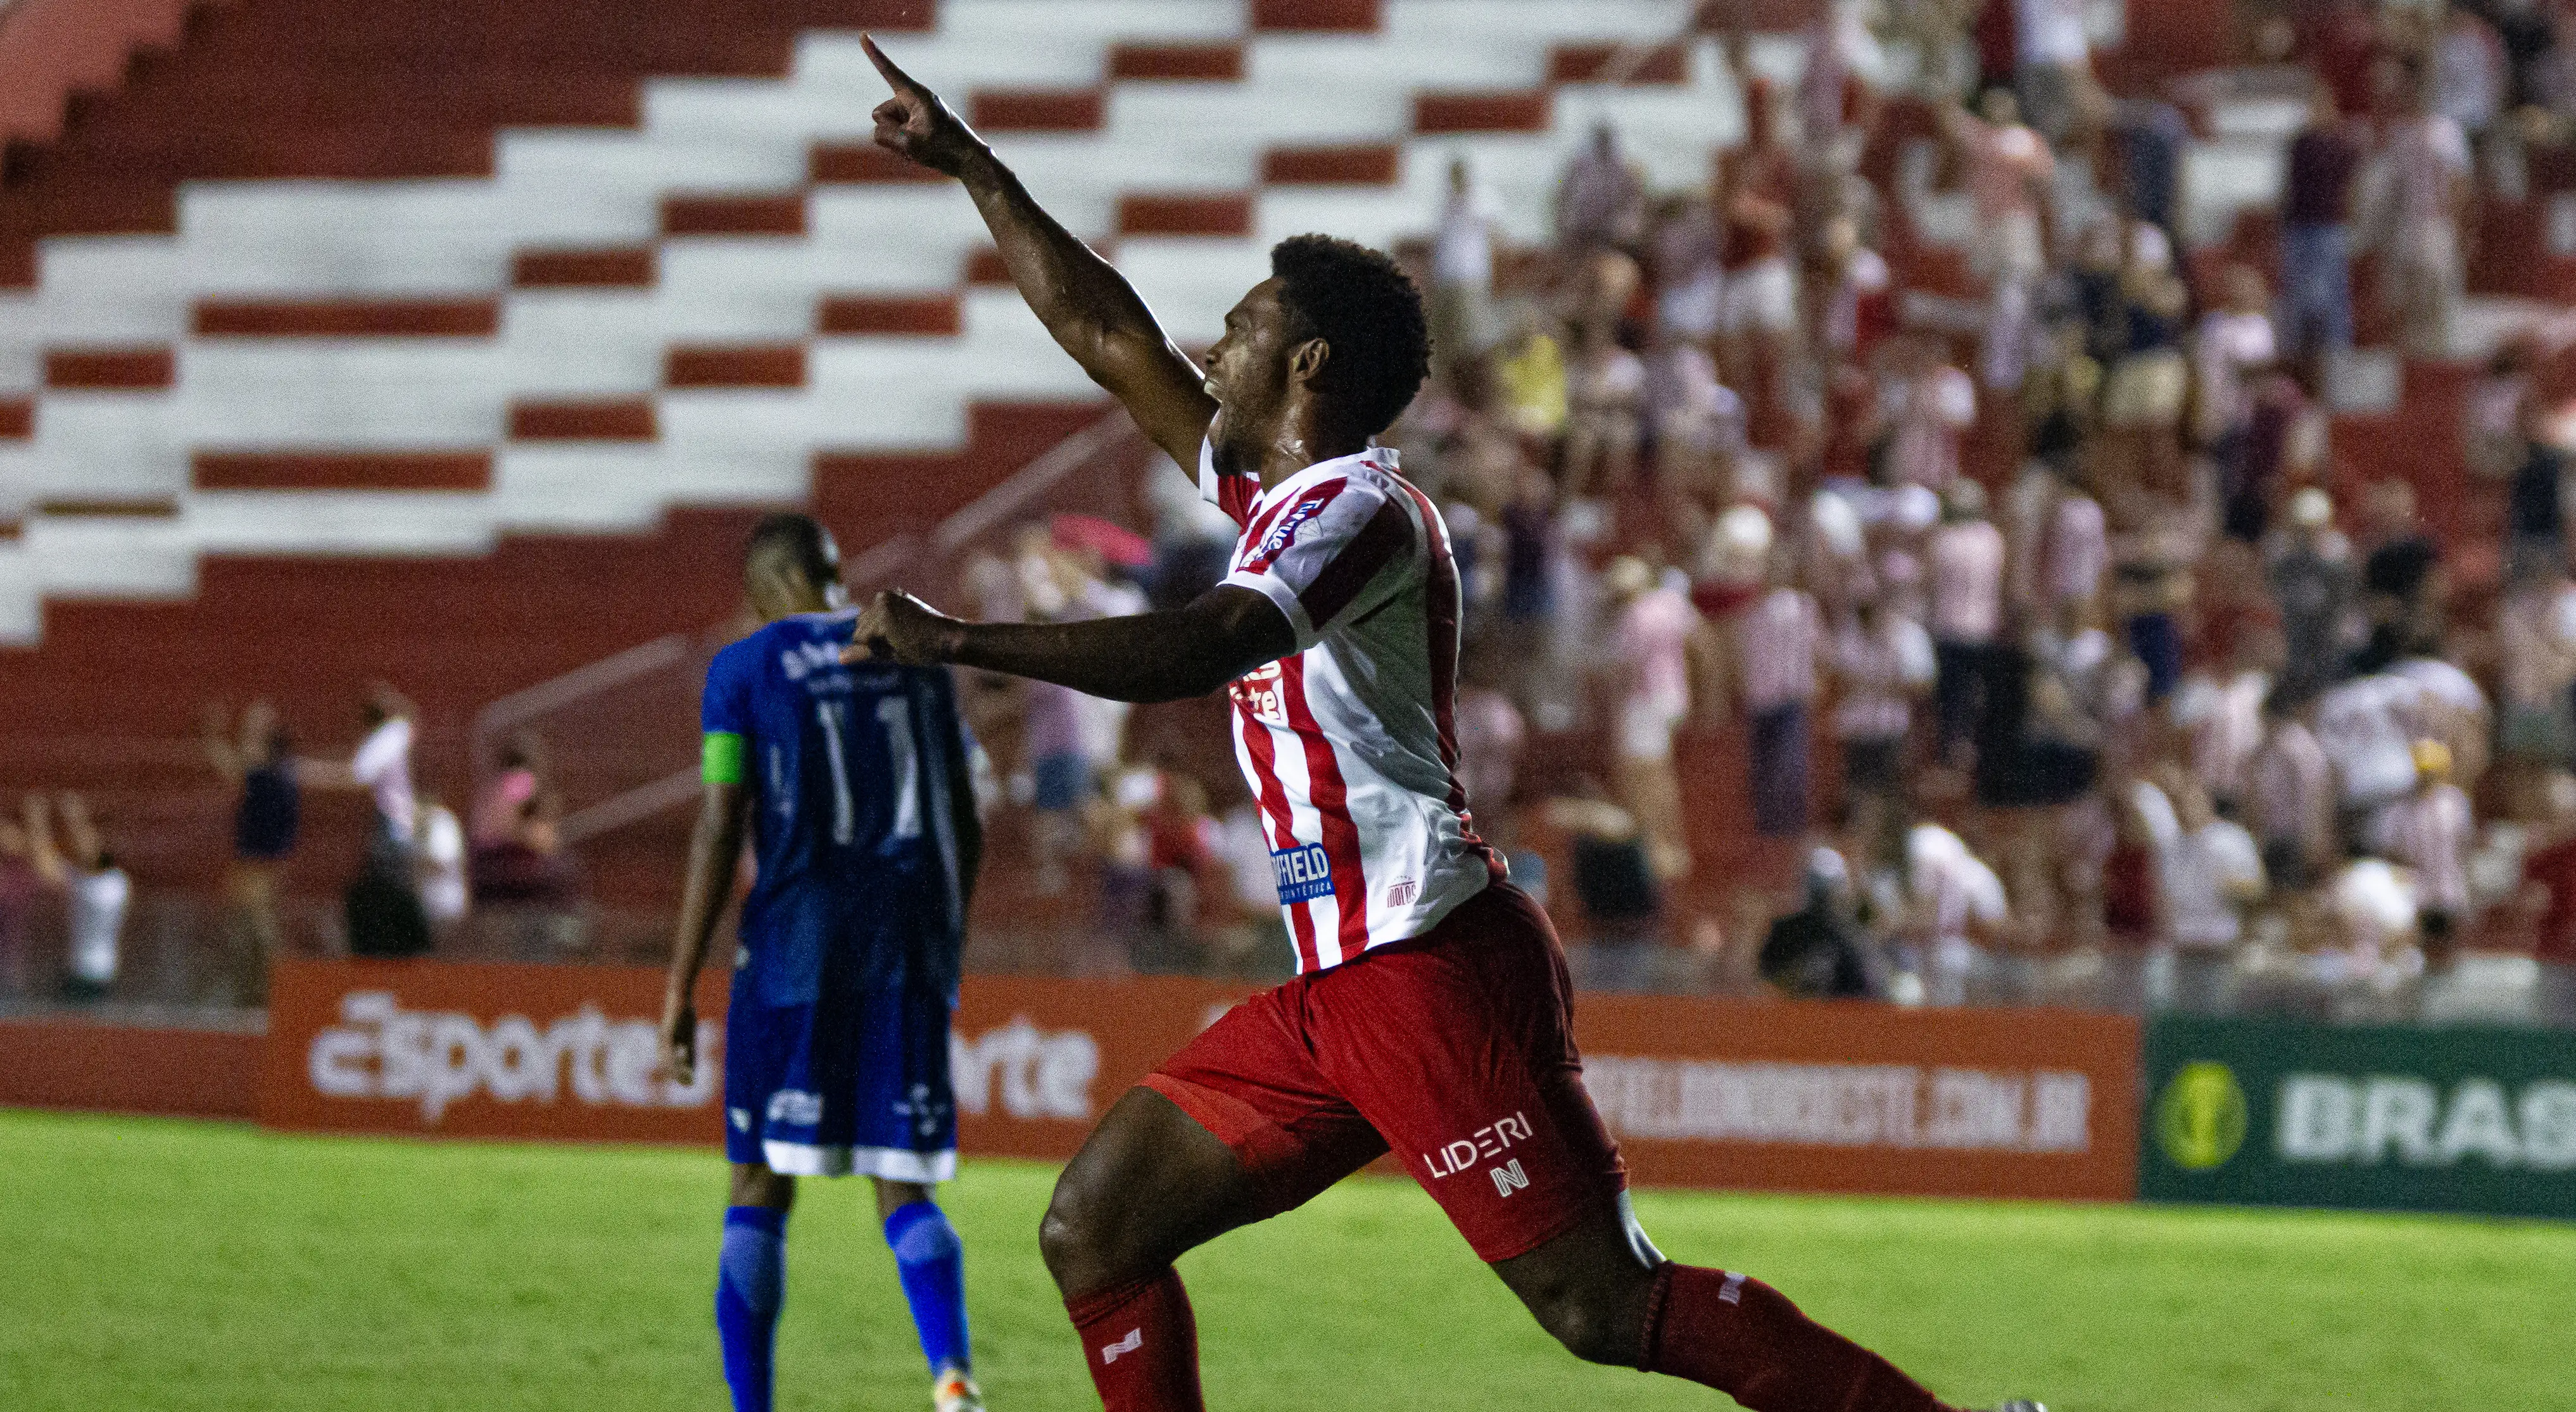 Imagem do atacante Bruno Mezenga, do Náutico, comemorando um gol